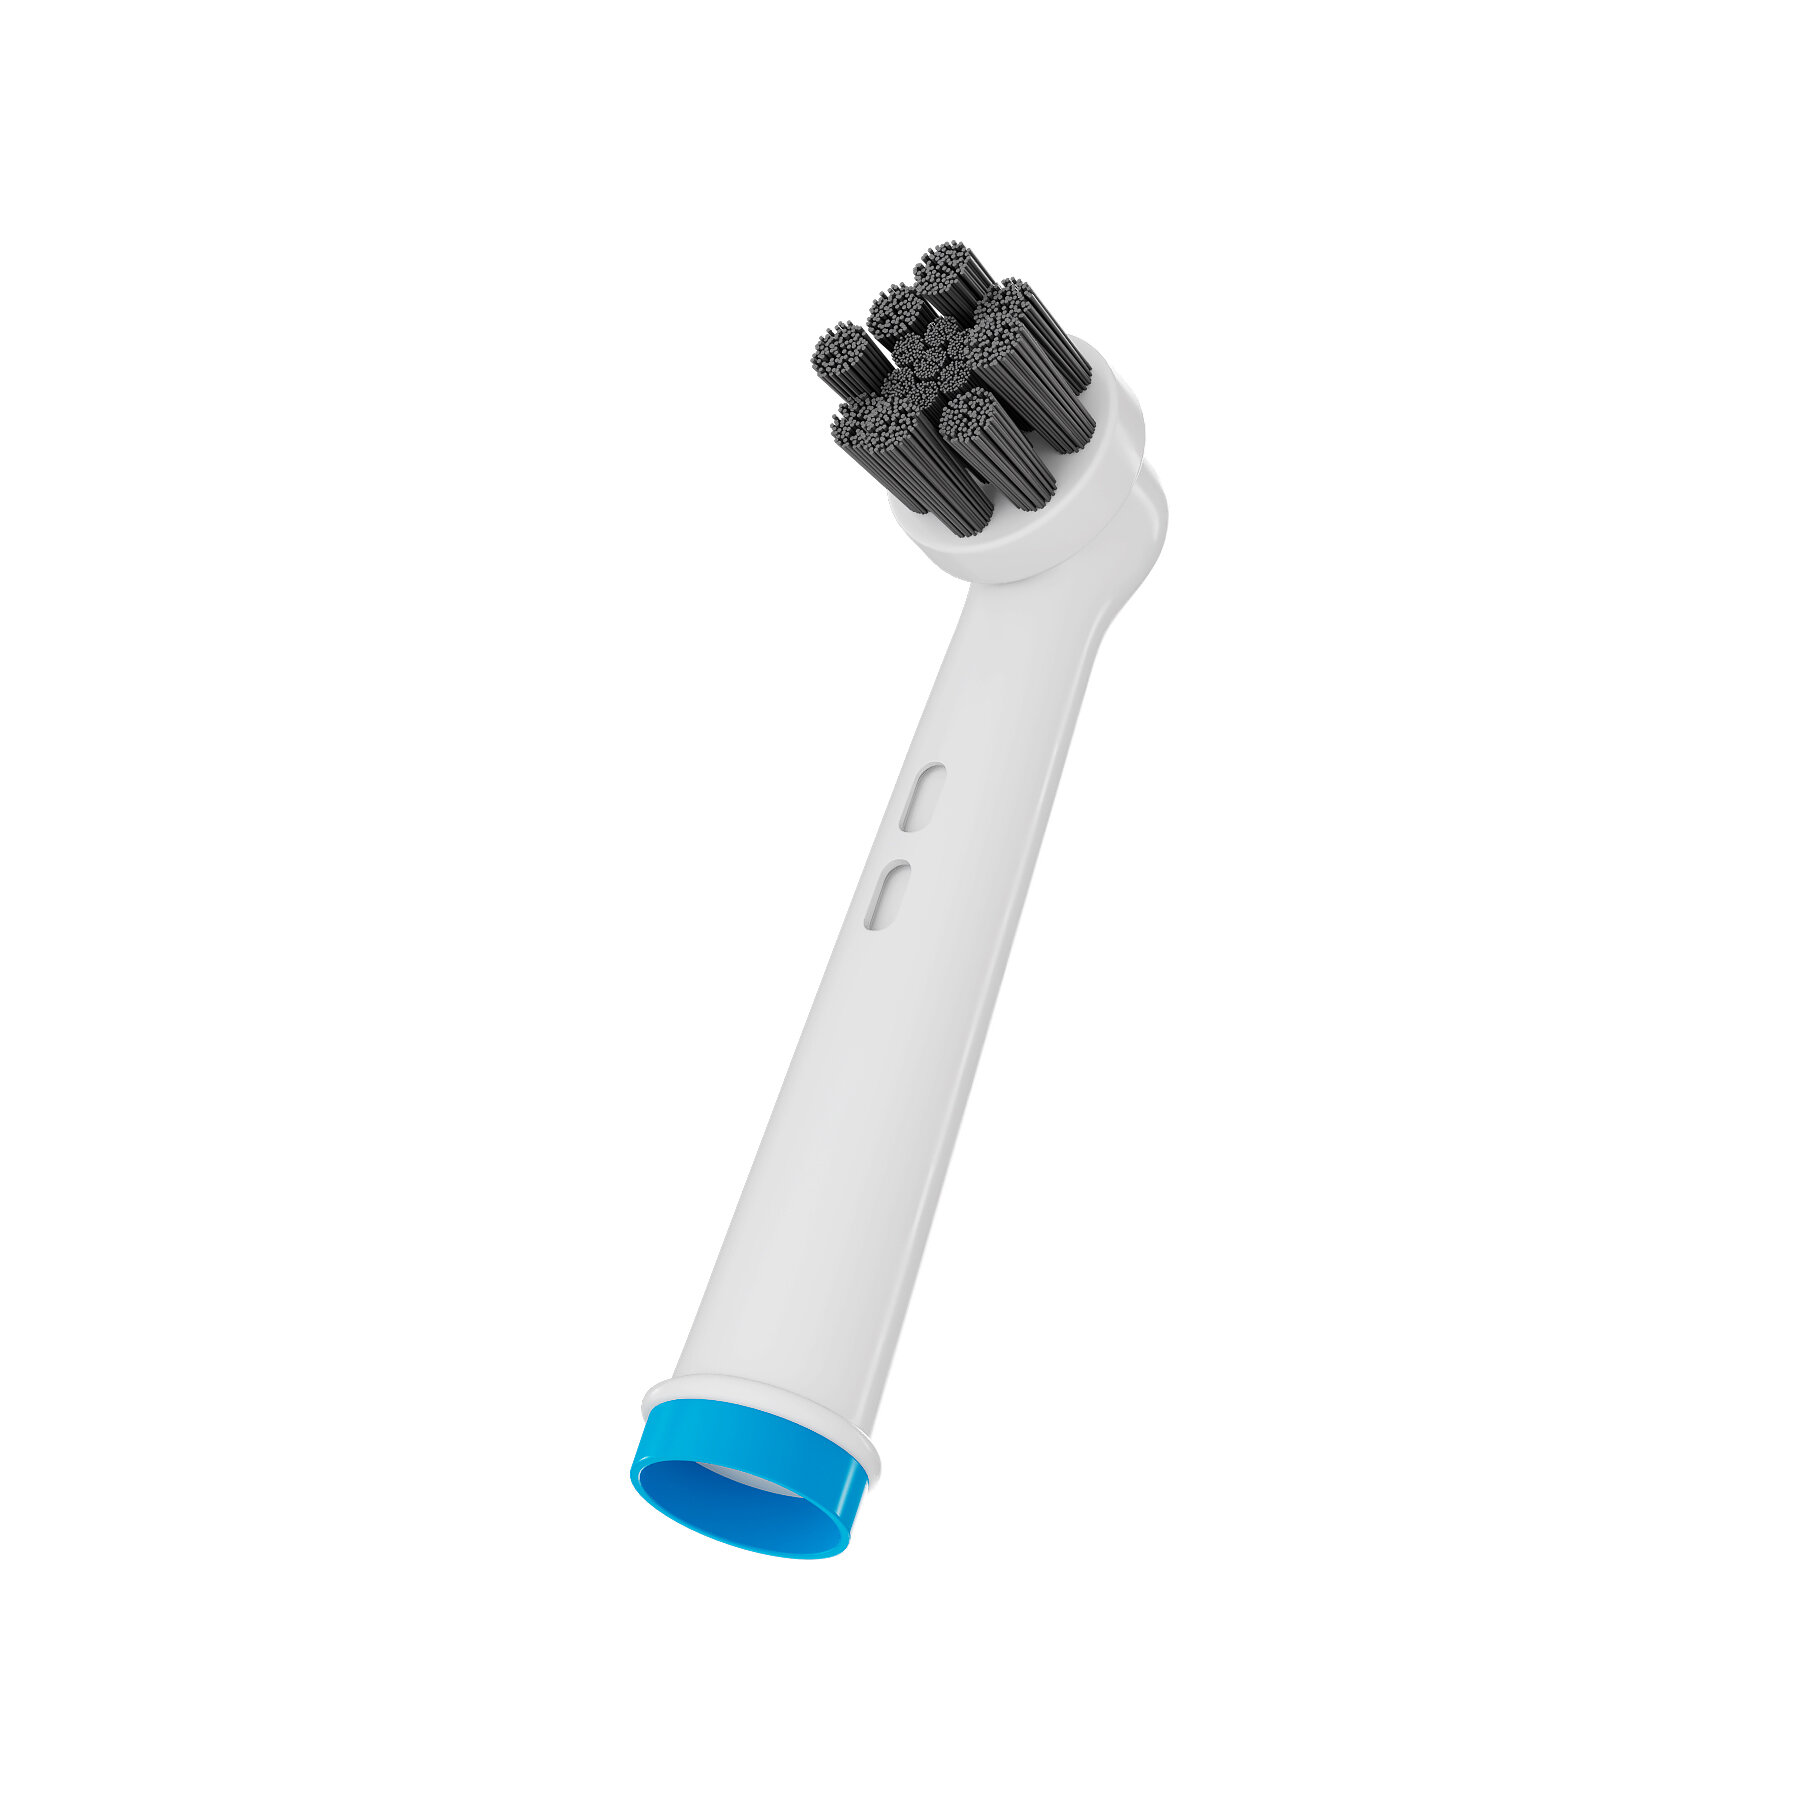 Насадка 5Lights EB58-X Charcoal для электрической зубной щетки Oral-b, совместимая, средней жесткости (Синий)